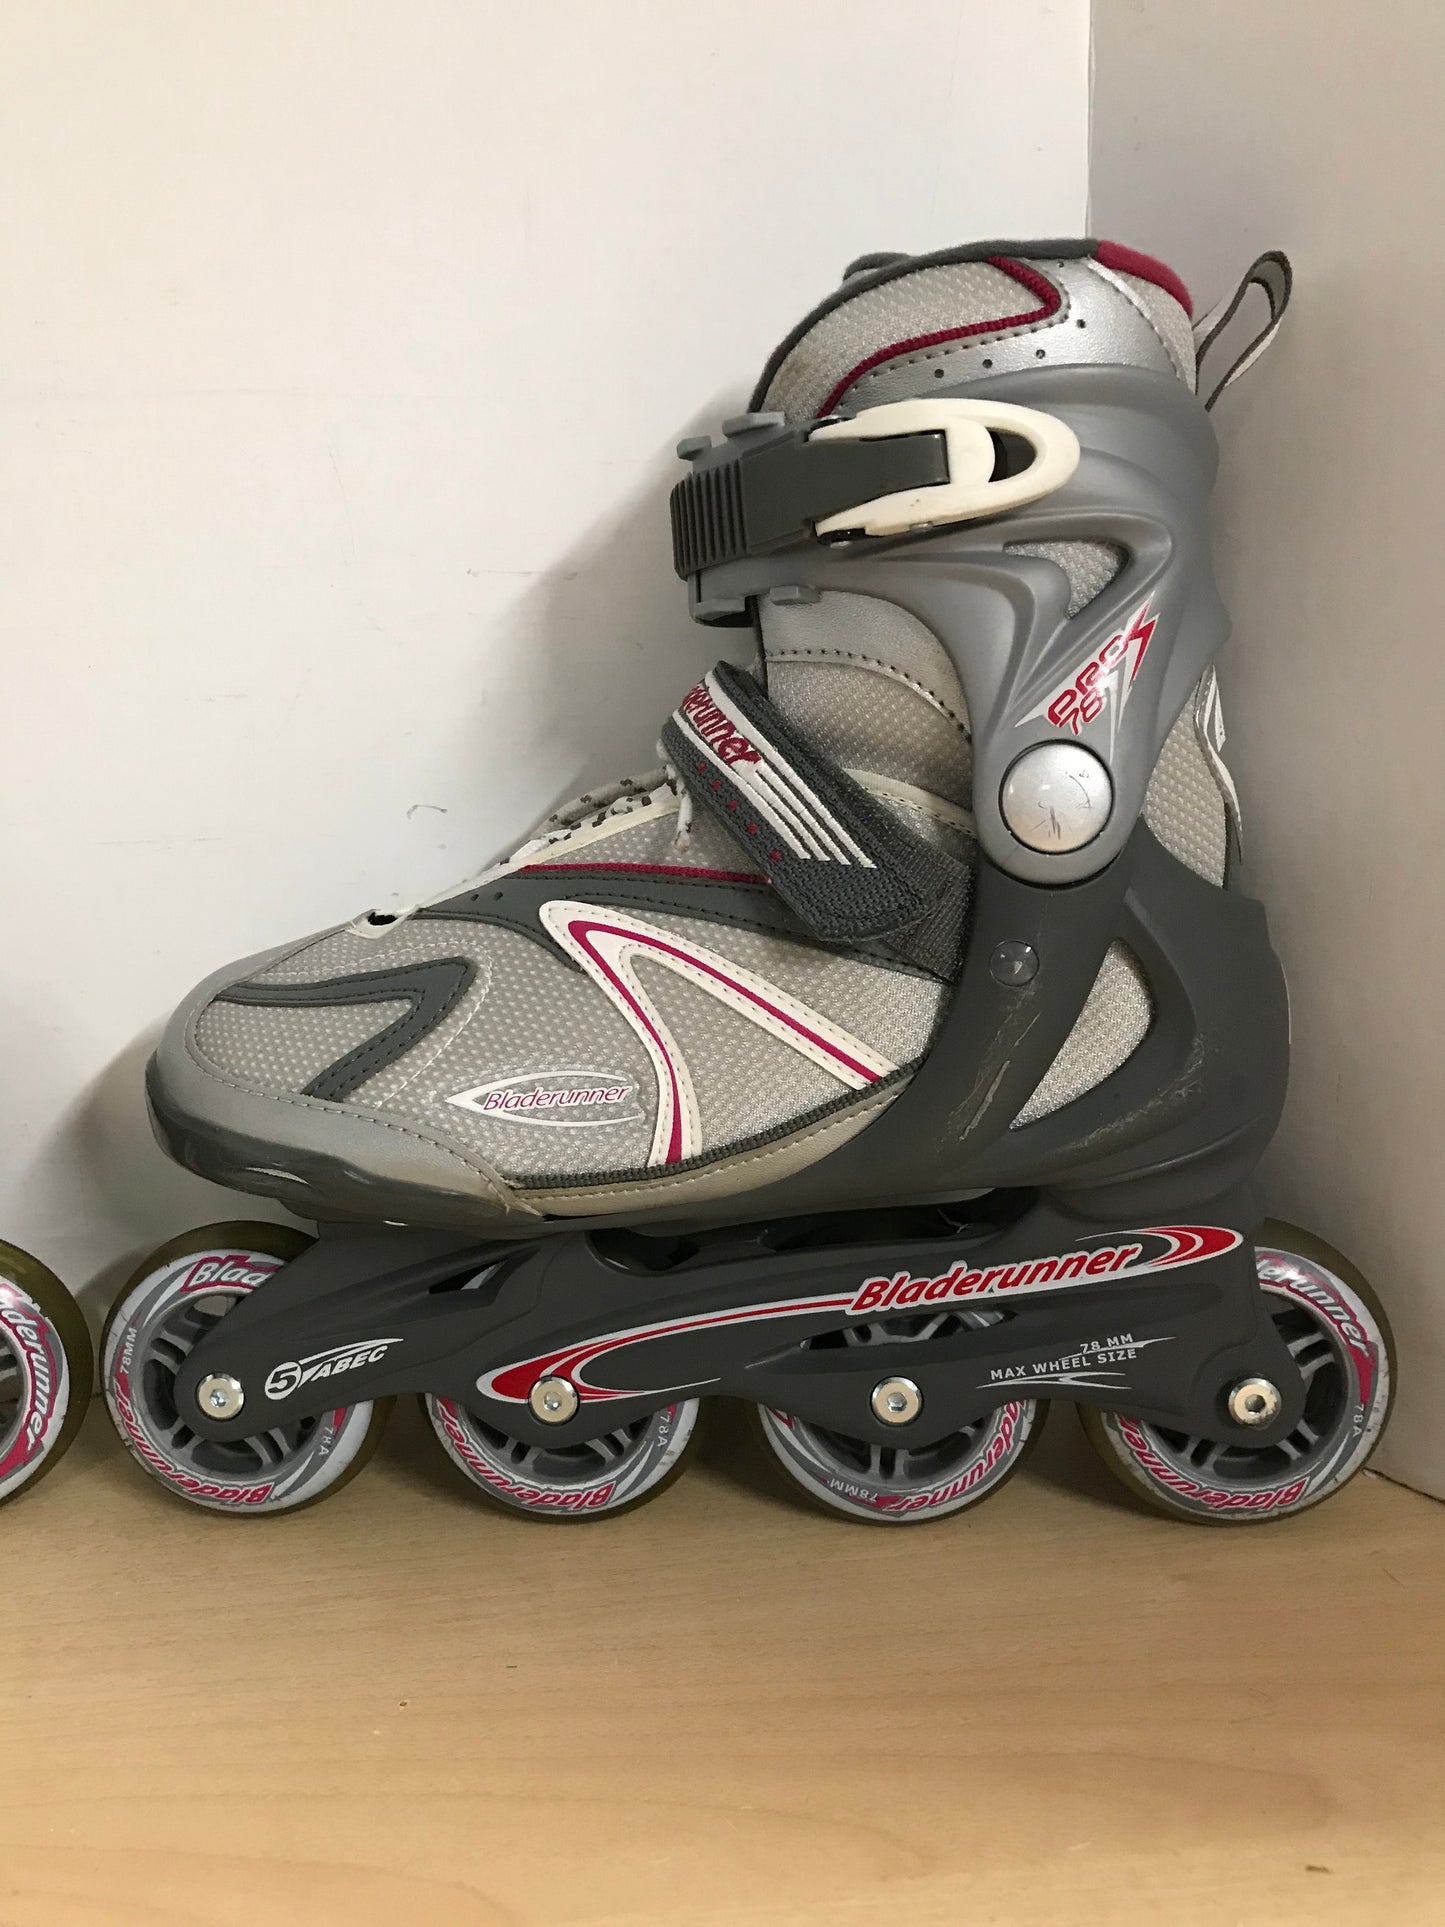 Inline Roller Skates Ladies Size 8 BladeRunner Grey Raspberry Rubber Wheels Excellent